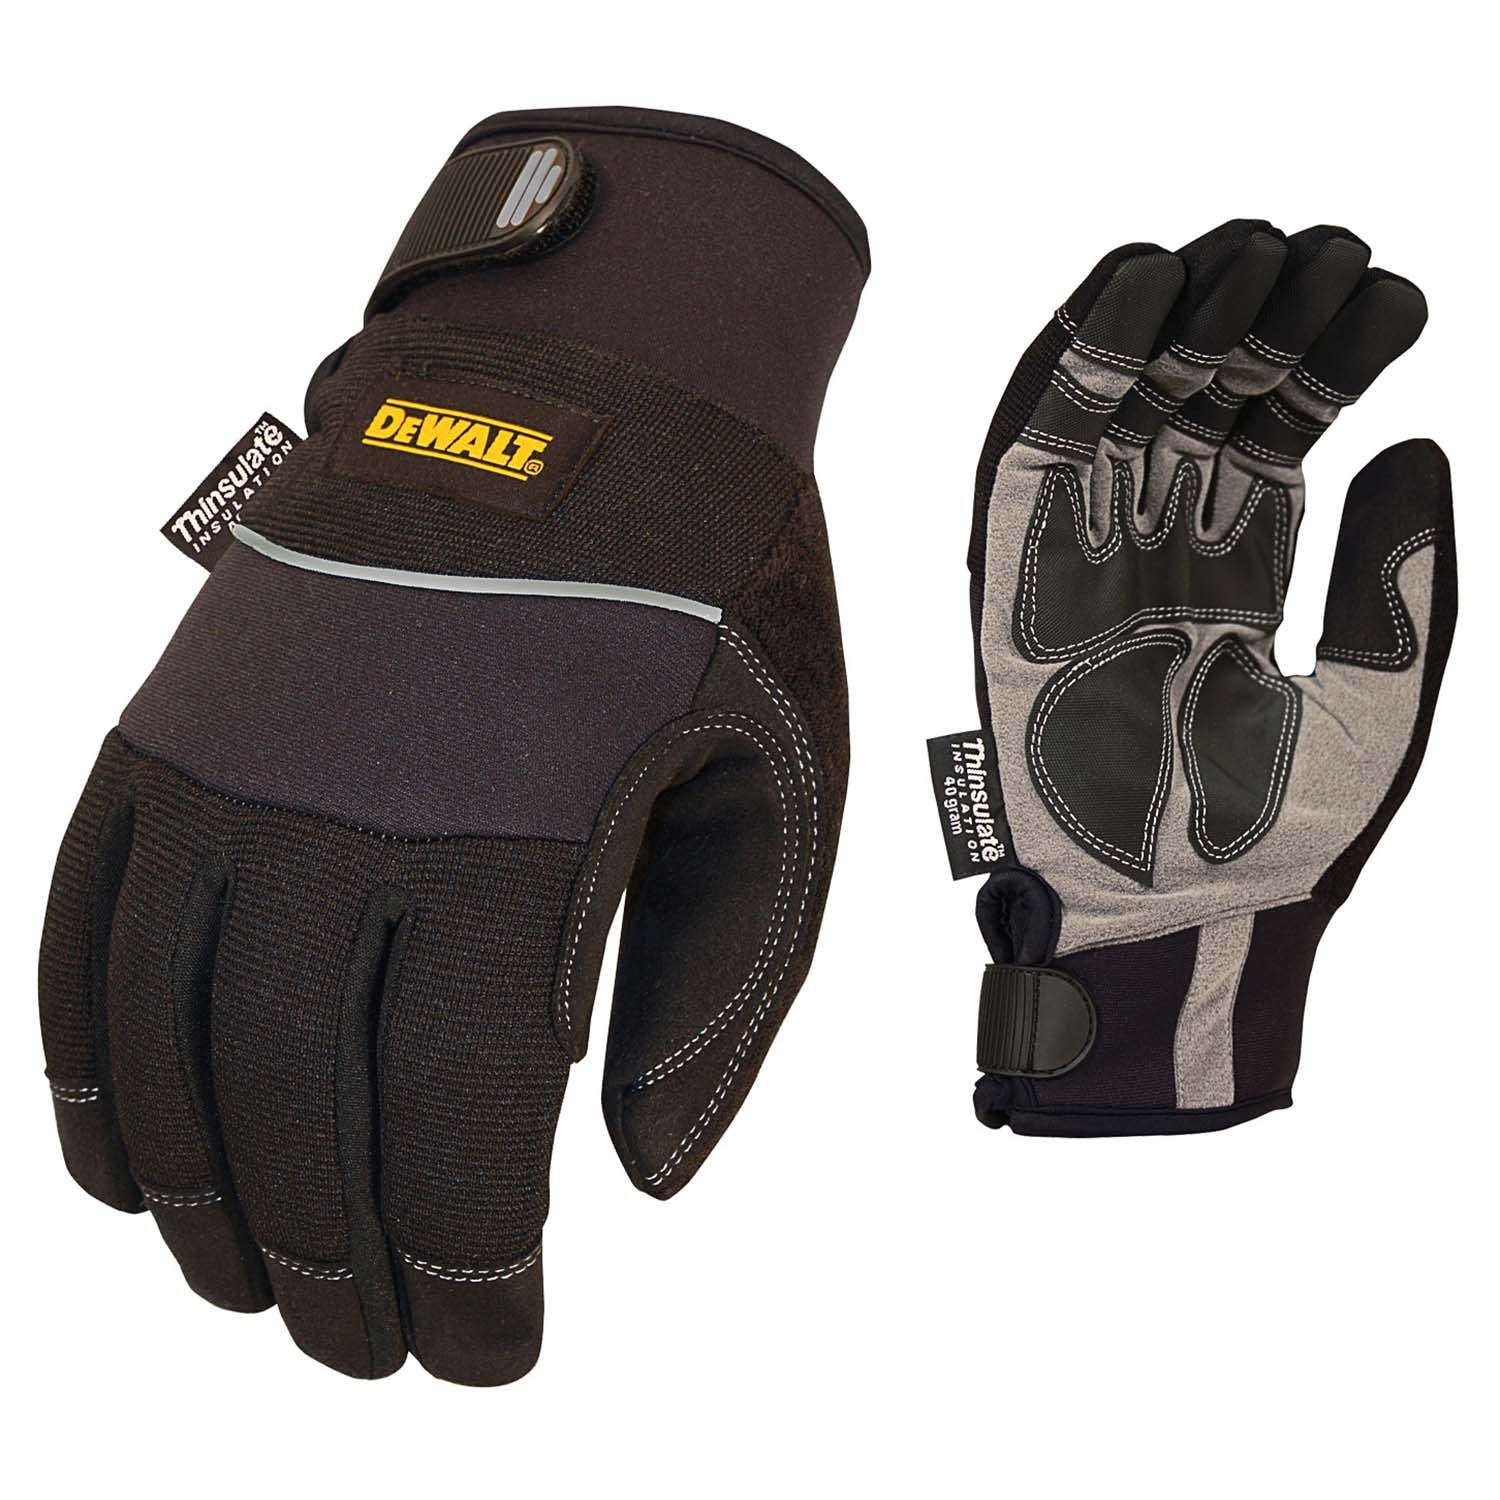 DEWALT DPG755 Insulated Harsh Condition Work Glove-eSafety Supplies, Inc